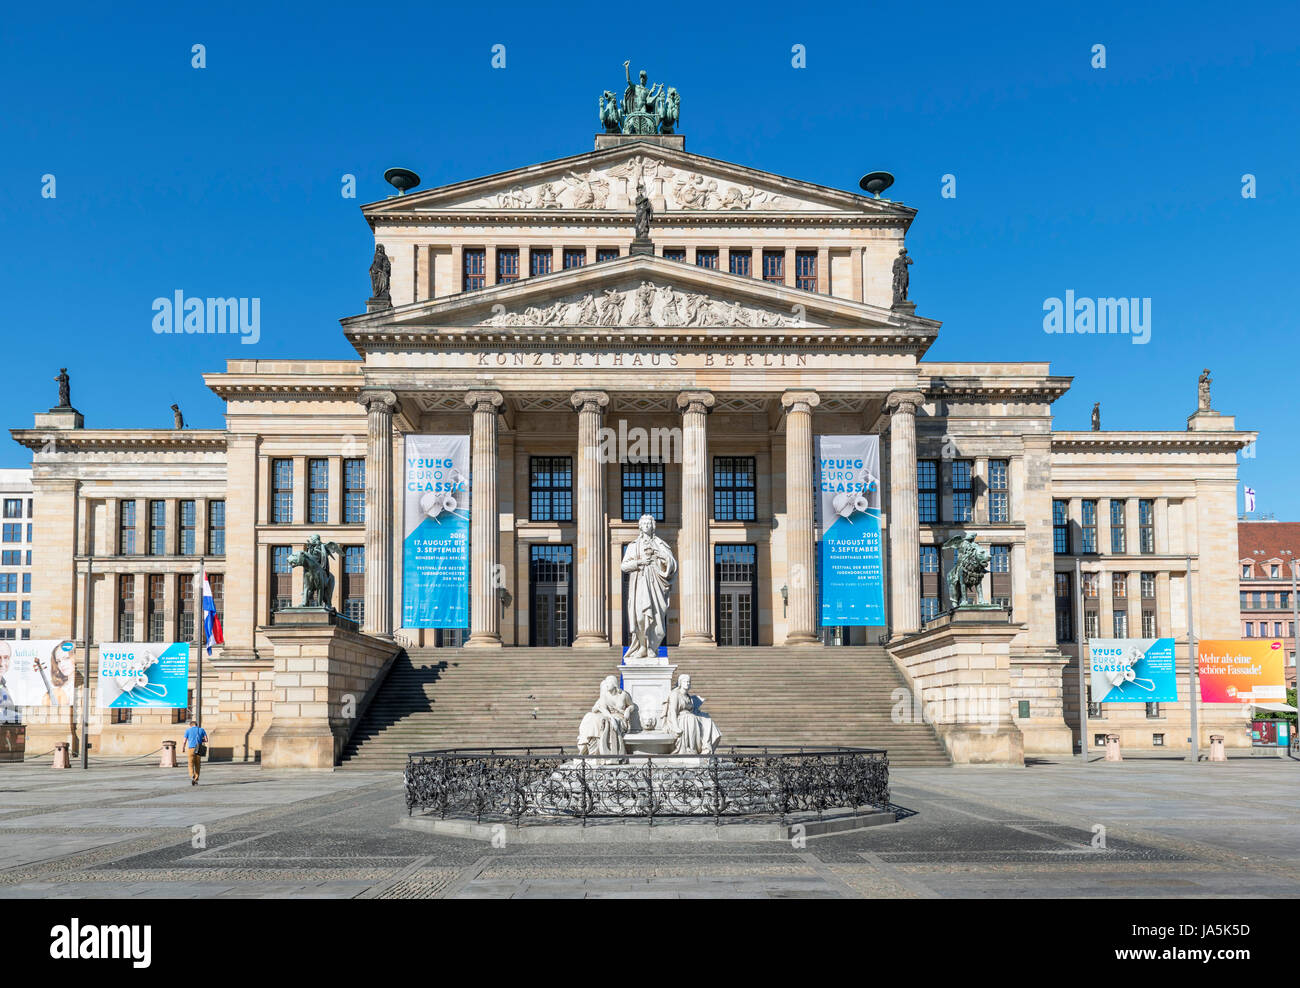 The Konzerthaus (Concer Hall) in Gendarmenmarkt, Friedrichstadt district, Berlin, Germany Stock Photo